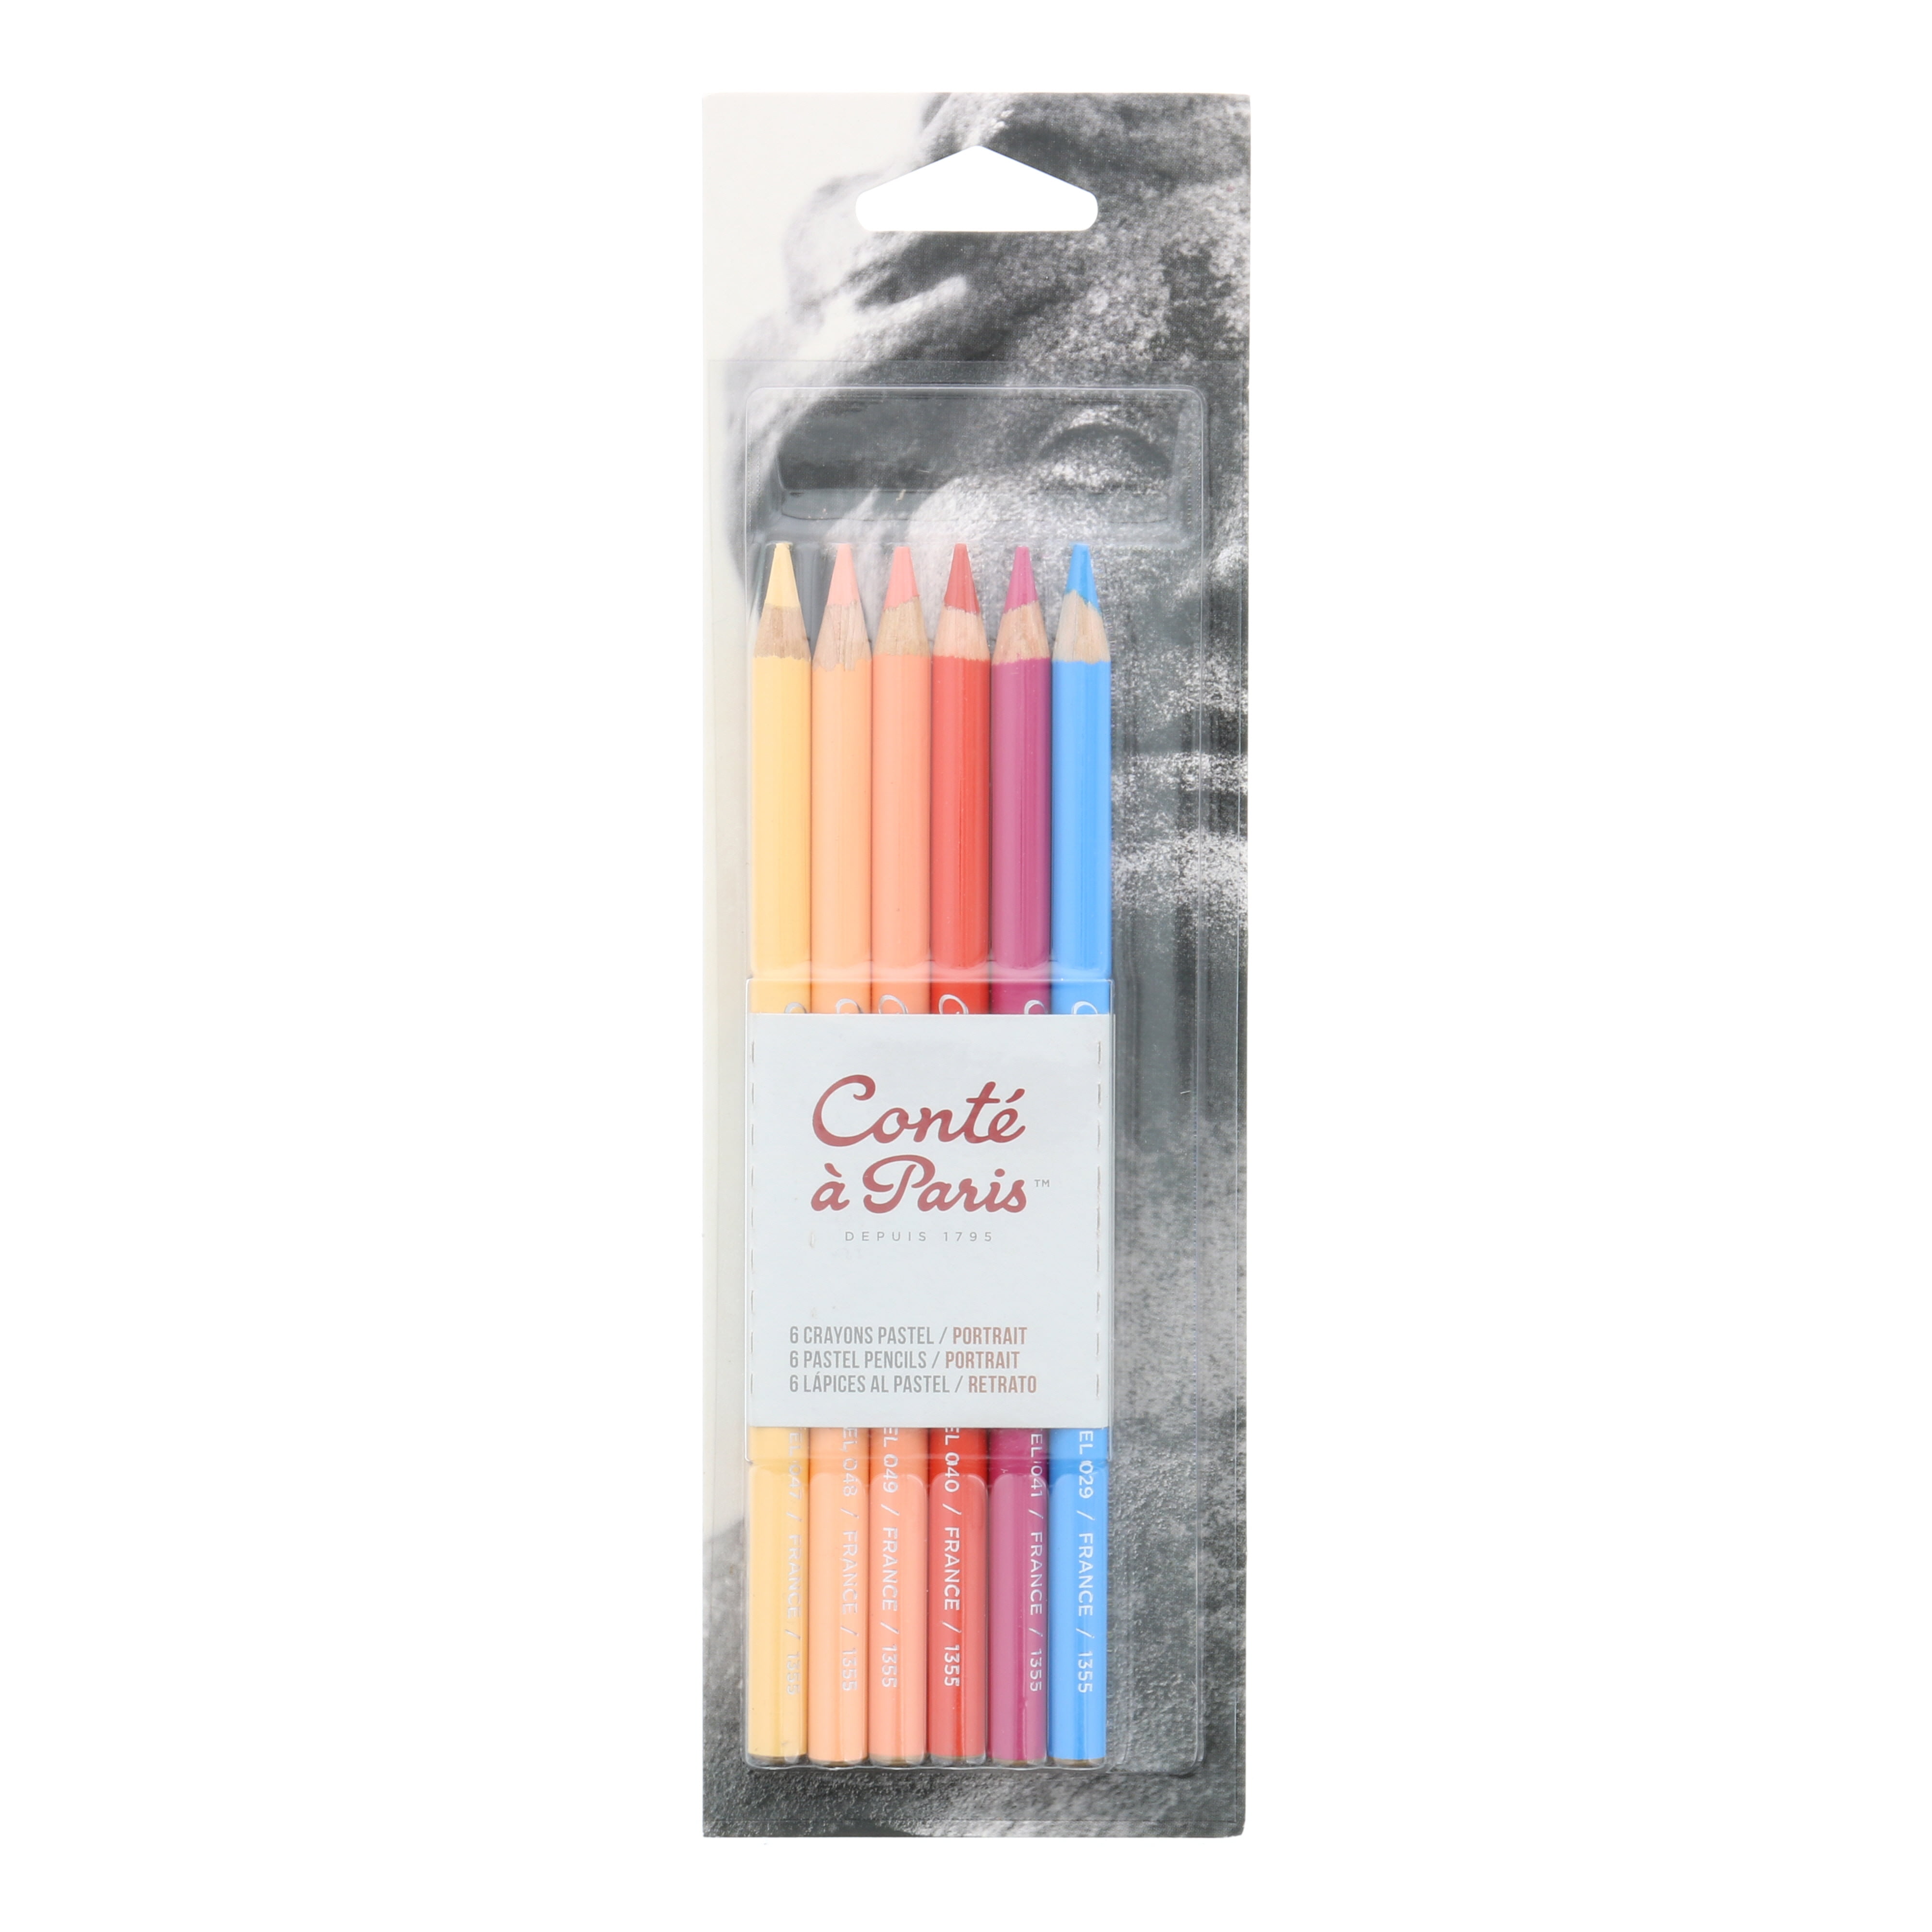 Conte Pastel Pencil Sets - 48 Assorted Colors